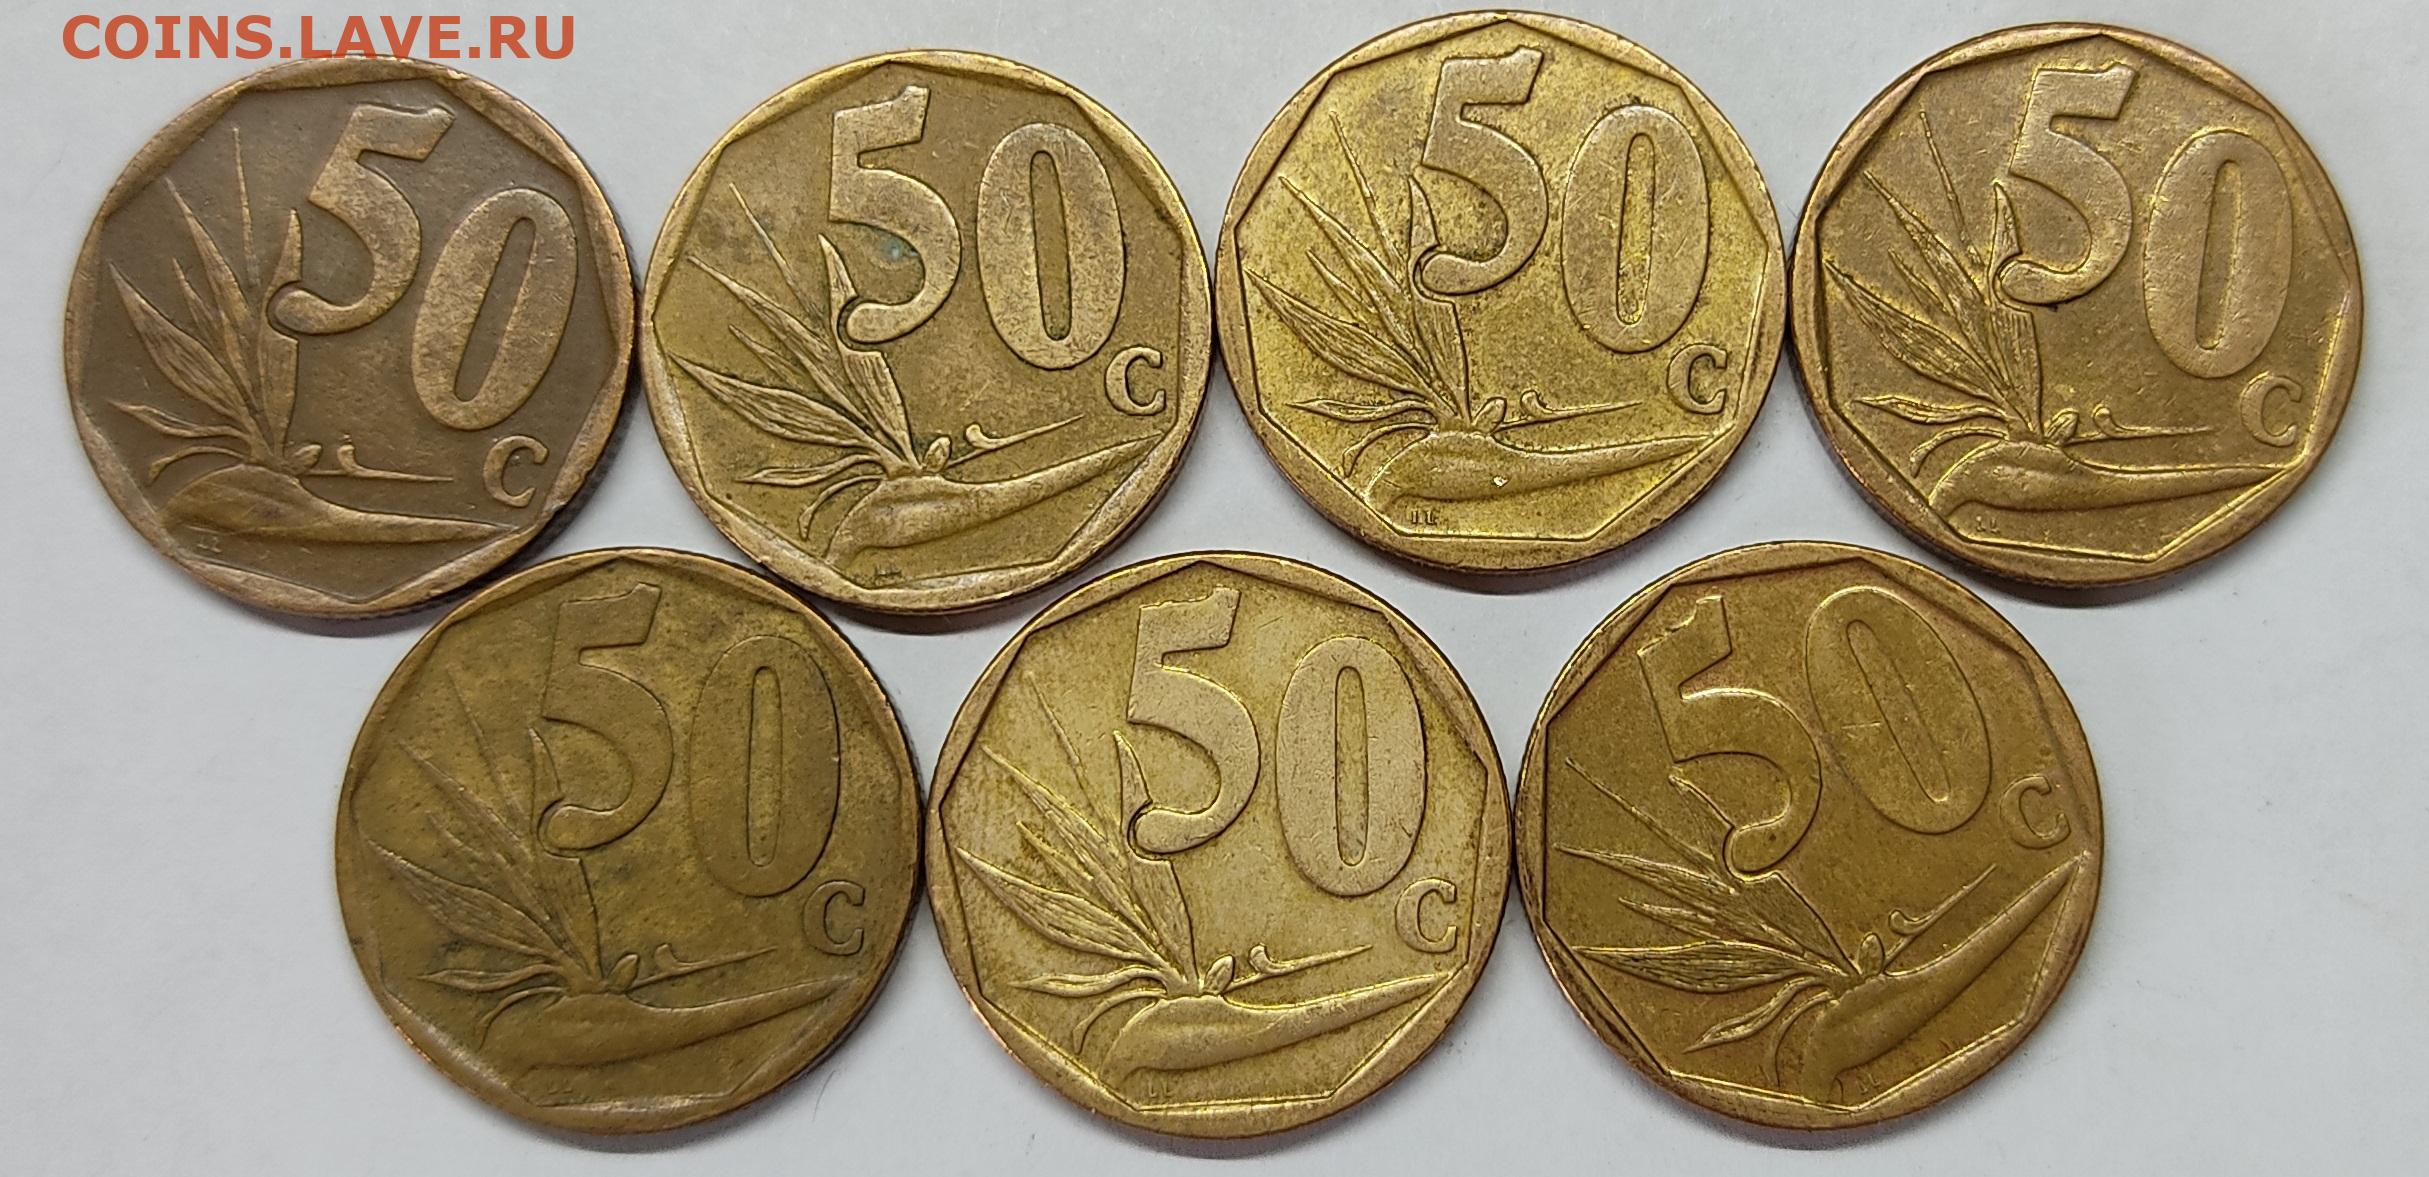 14 35 в рублях. 20 Евроцентов в рублях. 20 Евро цент в рублях. 50 Euro Cent в рублях. 50 Центов евро в рублях.